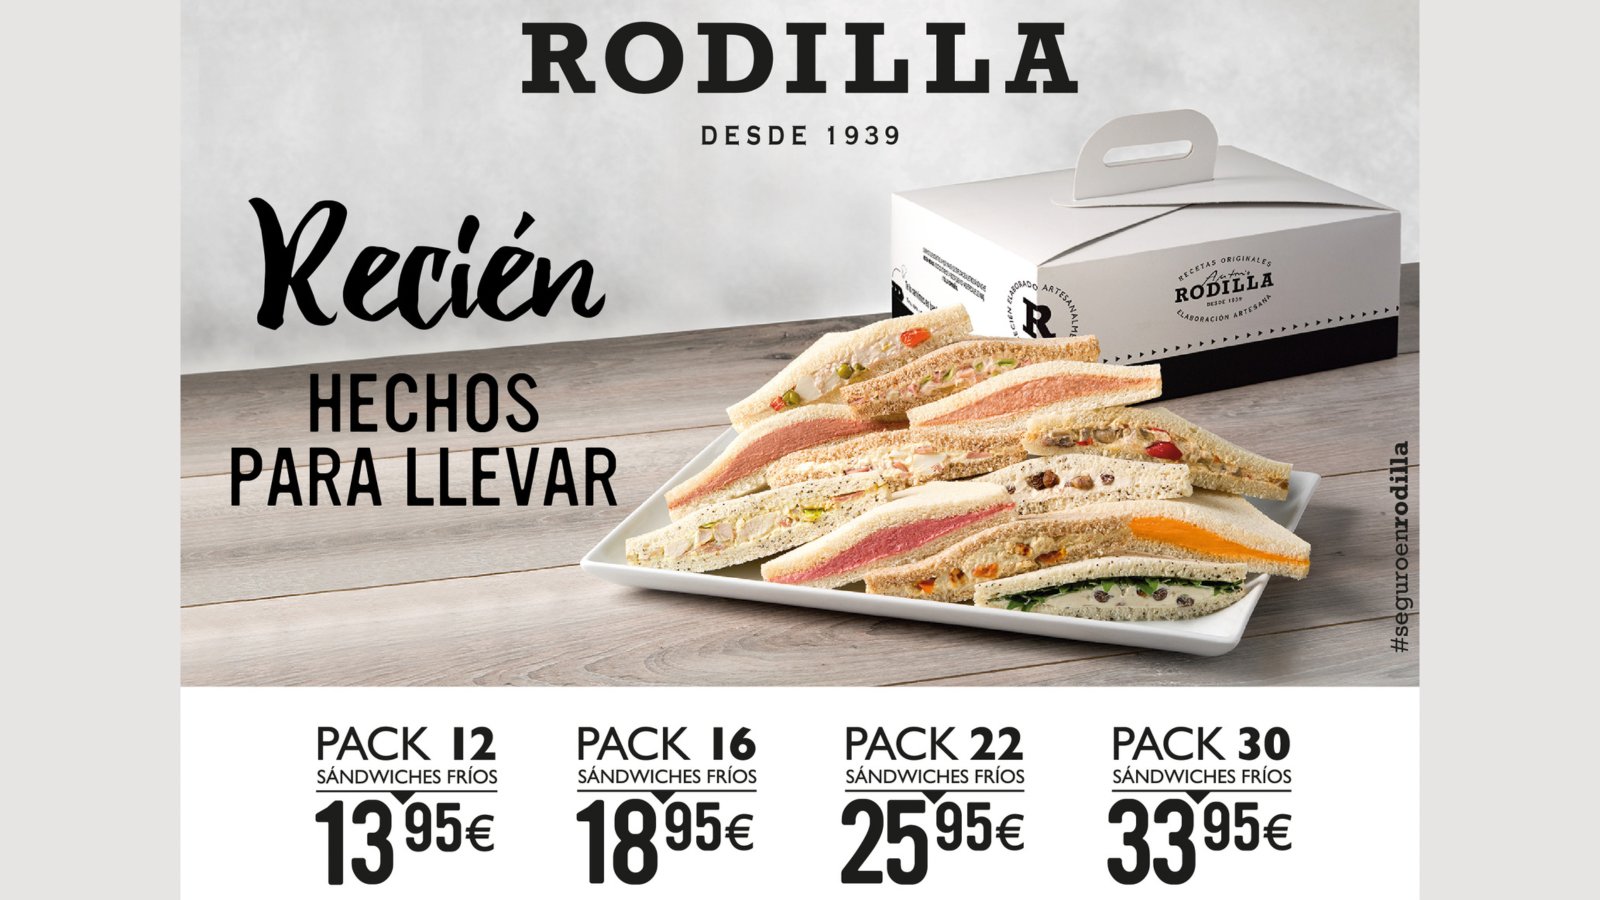 Twitter 上的 Centro Comercial RIVAS los packs de Rodilla? ¡recién hechos y listos para llevar! #rivascentro #rivasvaciamadrid #rodilla #seguroenrodilla #sandwiches #parallevar https://t.co/Ir4O6zOArE" / Twitter